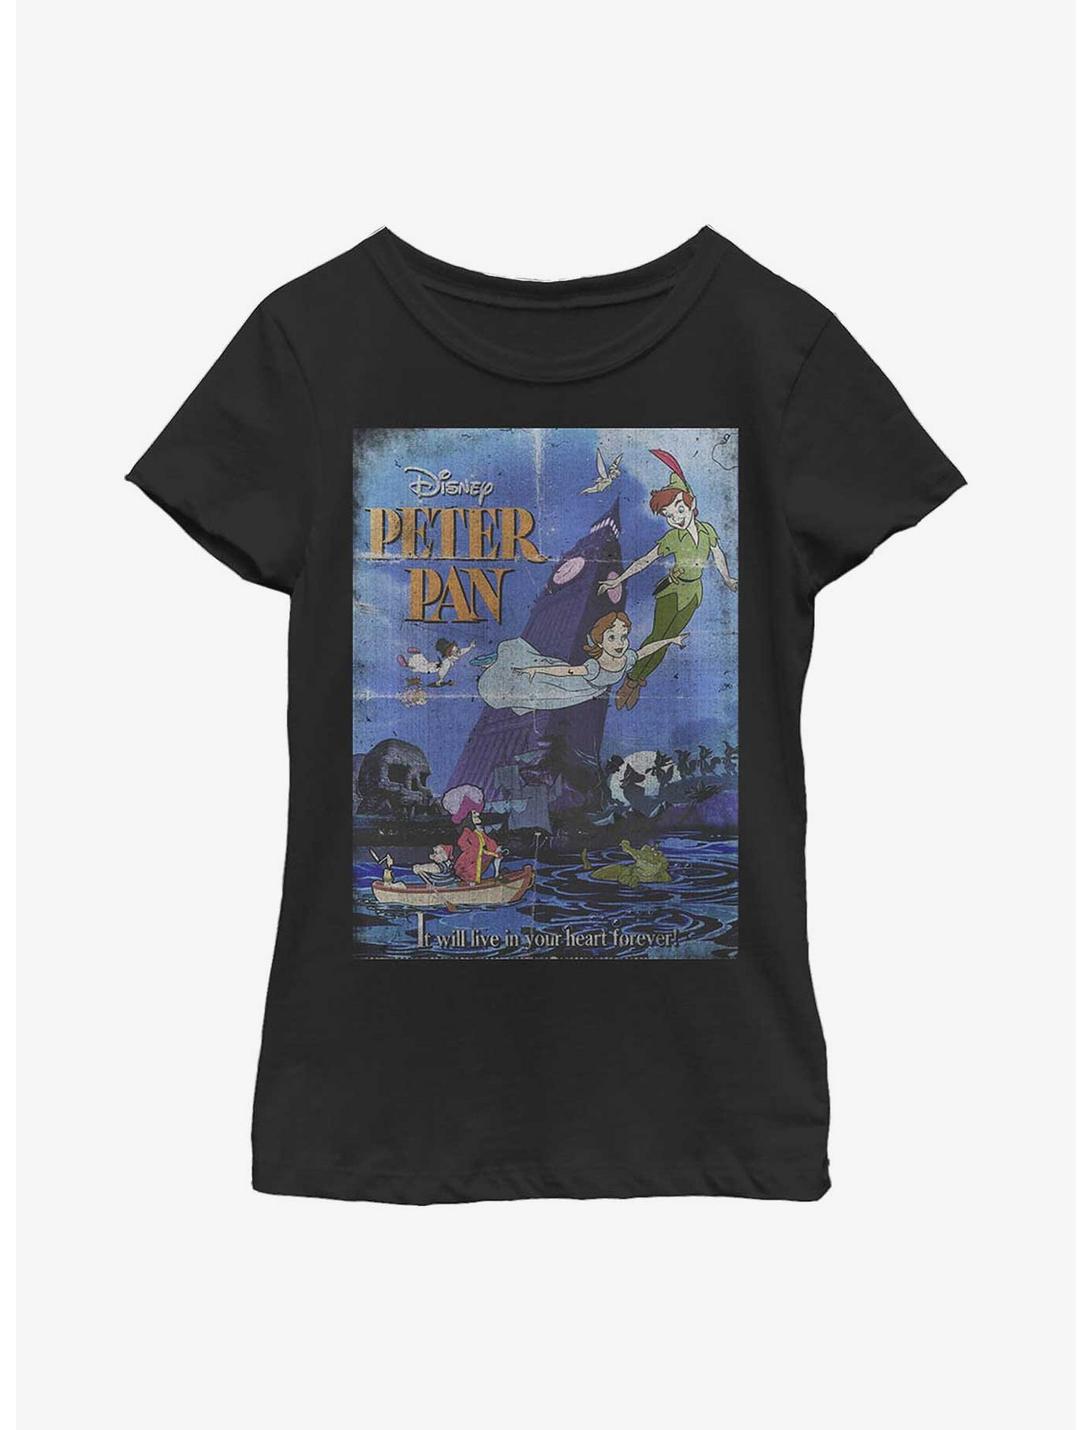 Disney Peter Pan Pan Poster Youth Girls T-Shirt, BLACK, hi-res